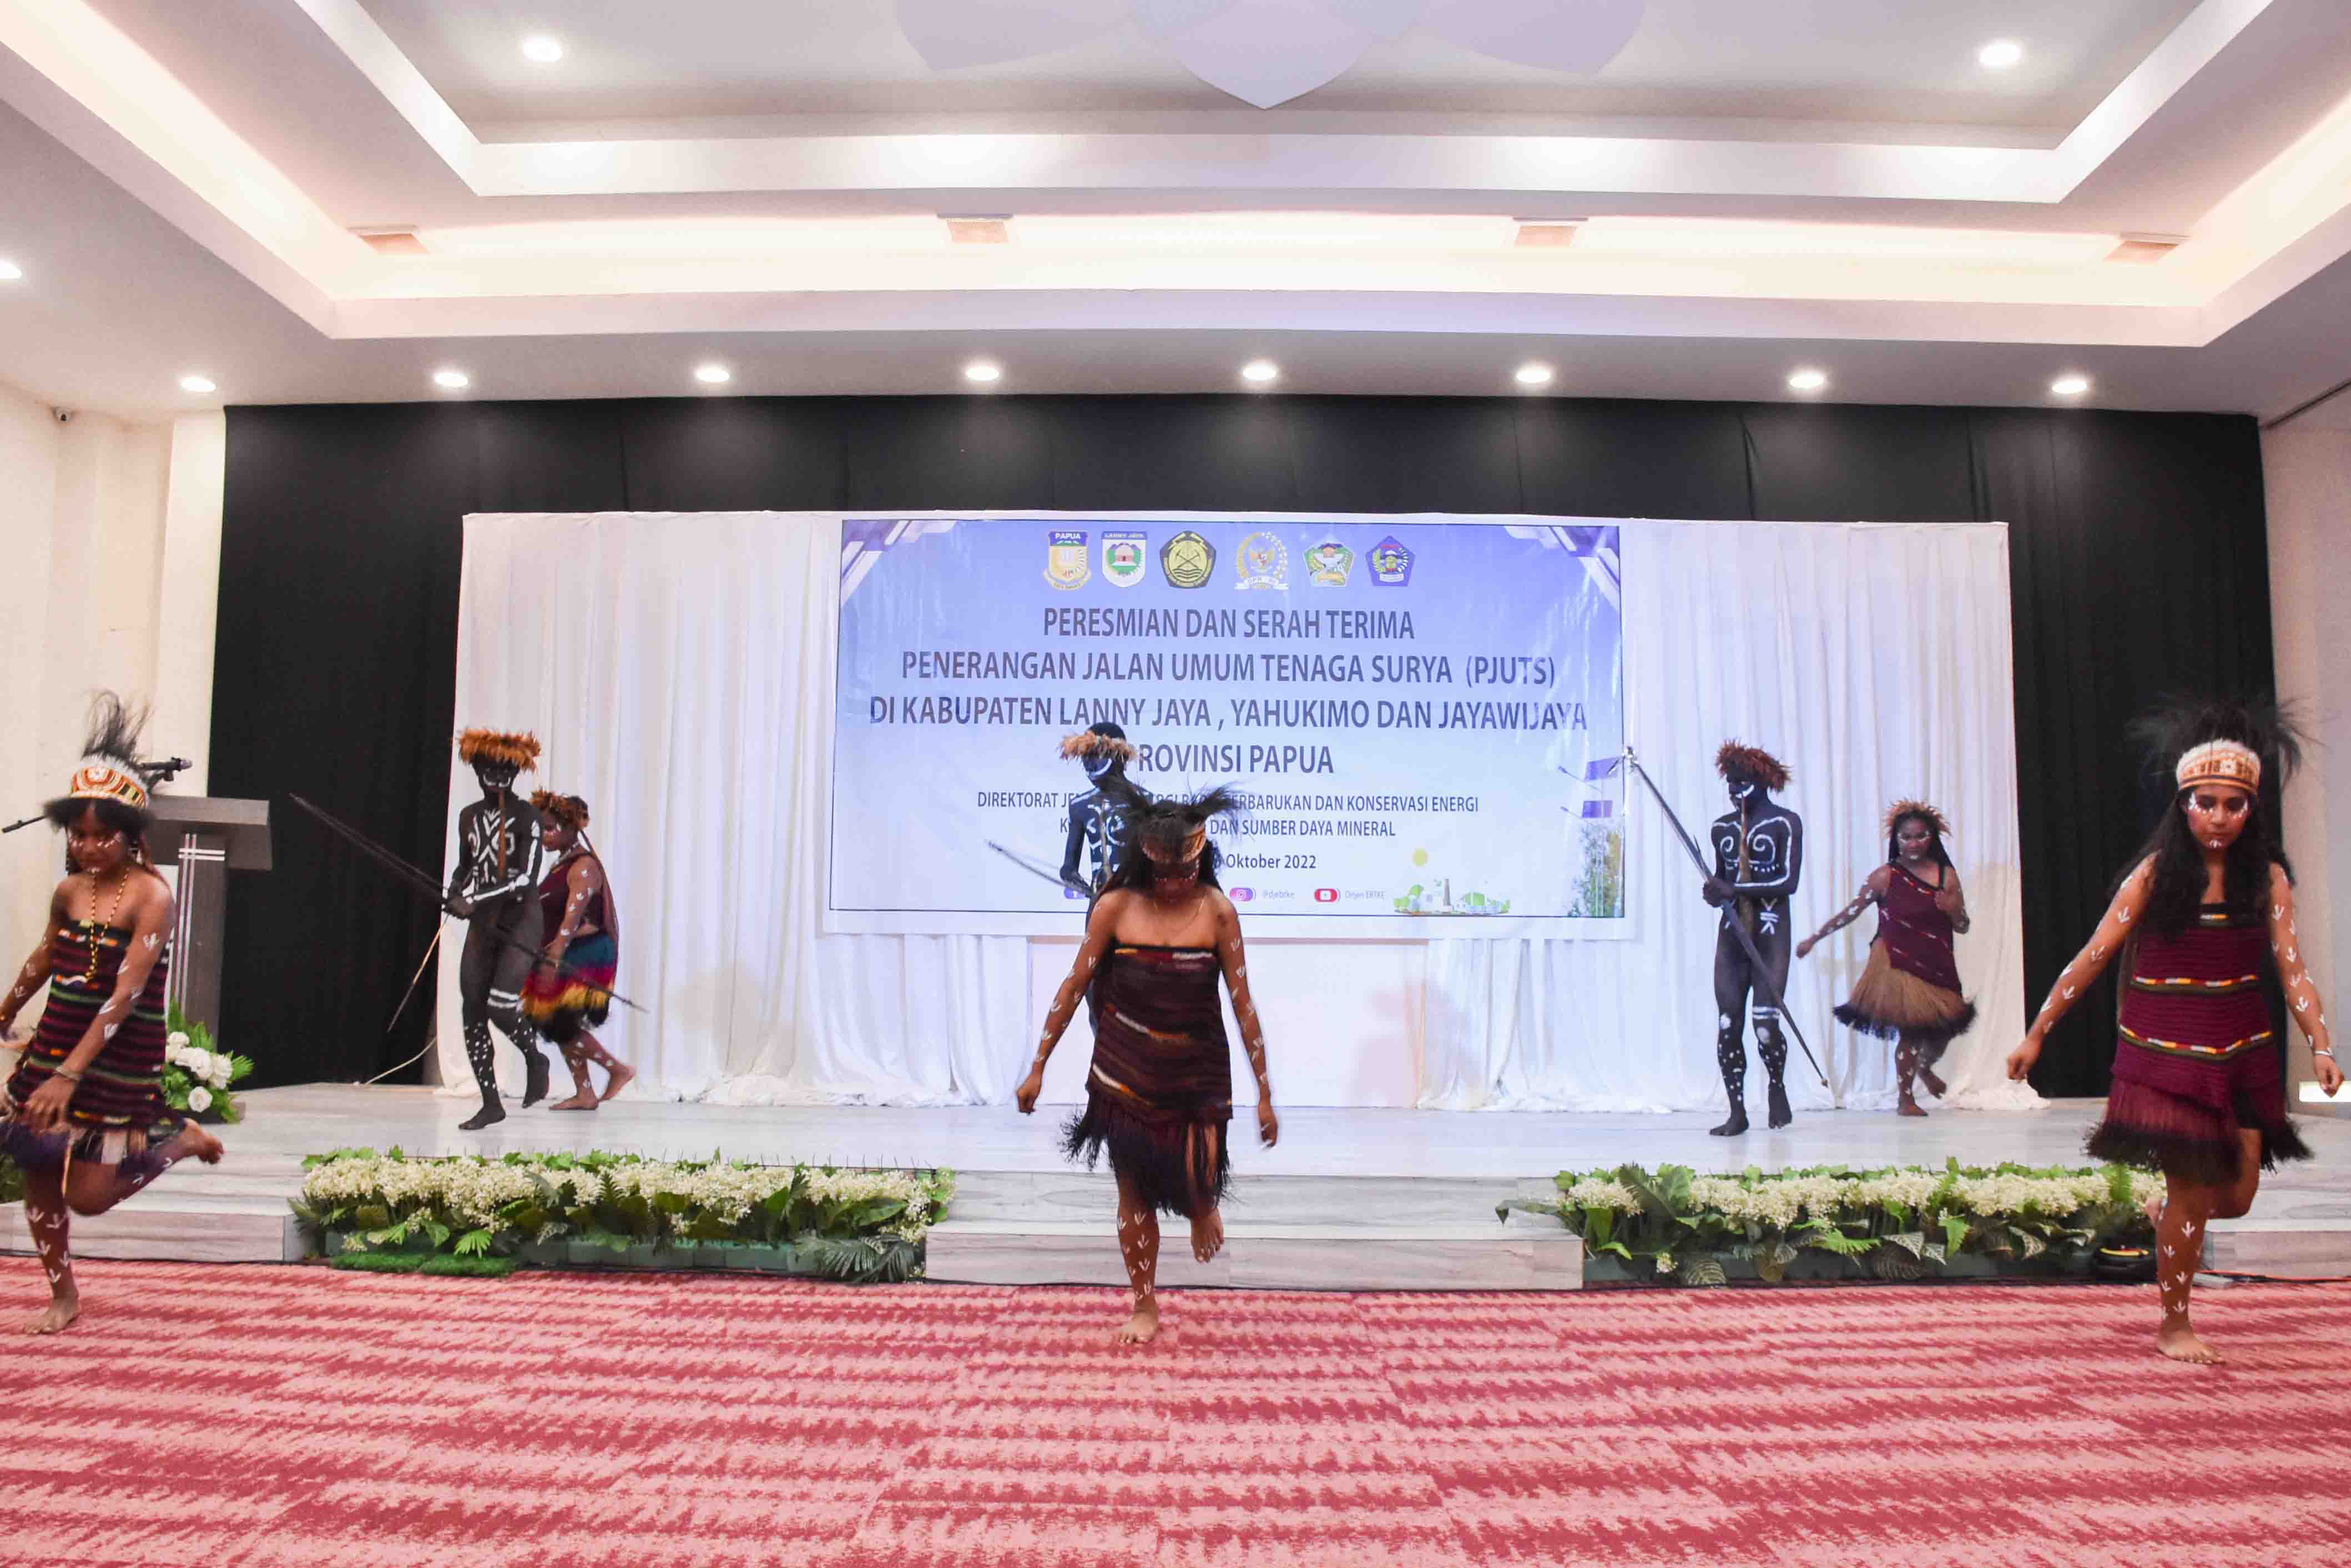 Tari Selamat Datang menjadi pembuka acara Peresmian dan Serah Terima 450 unit PJU-TS dari Kementerian ESDM kepada Pemprov Papua (15/10/2022)